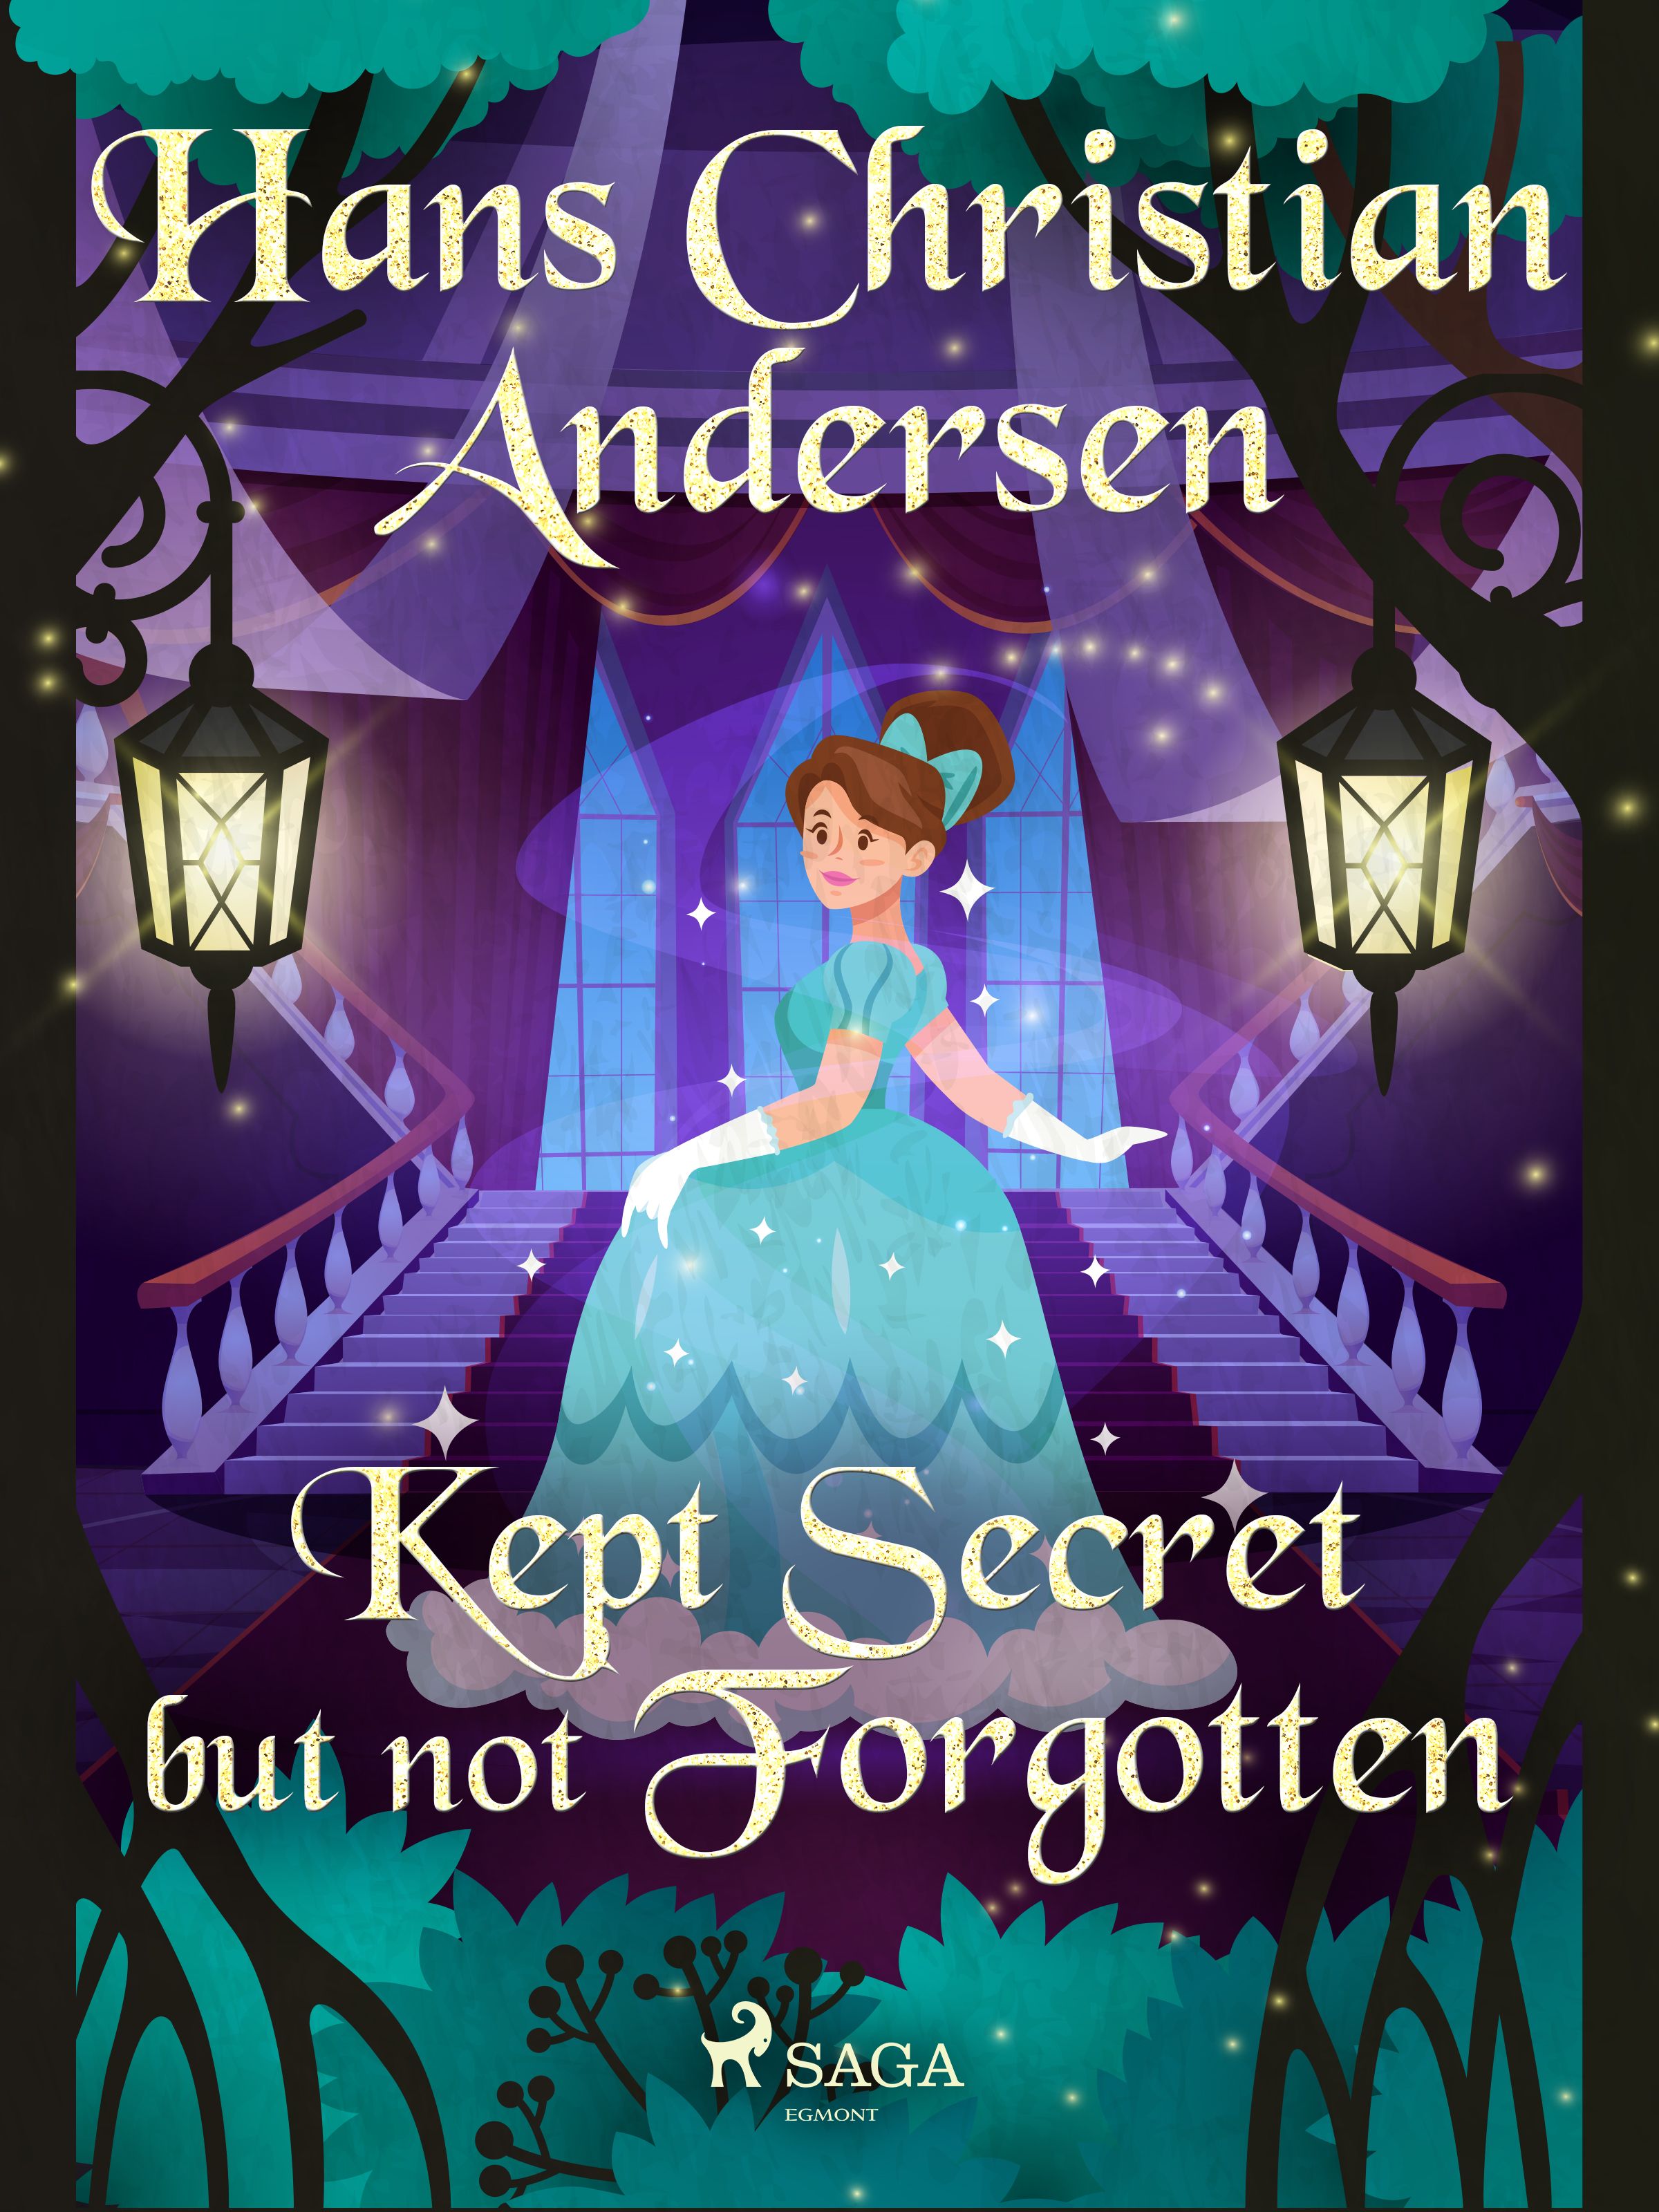 Kept Secret but not Forgotten, e-bok av Hans Christian Andersen